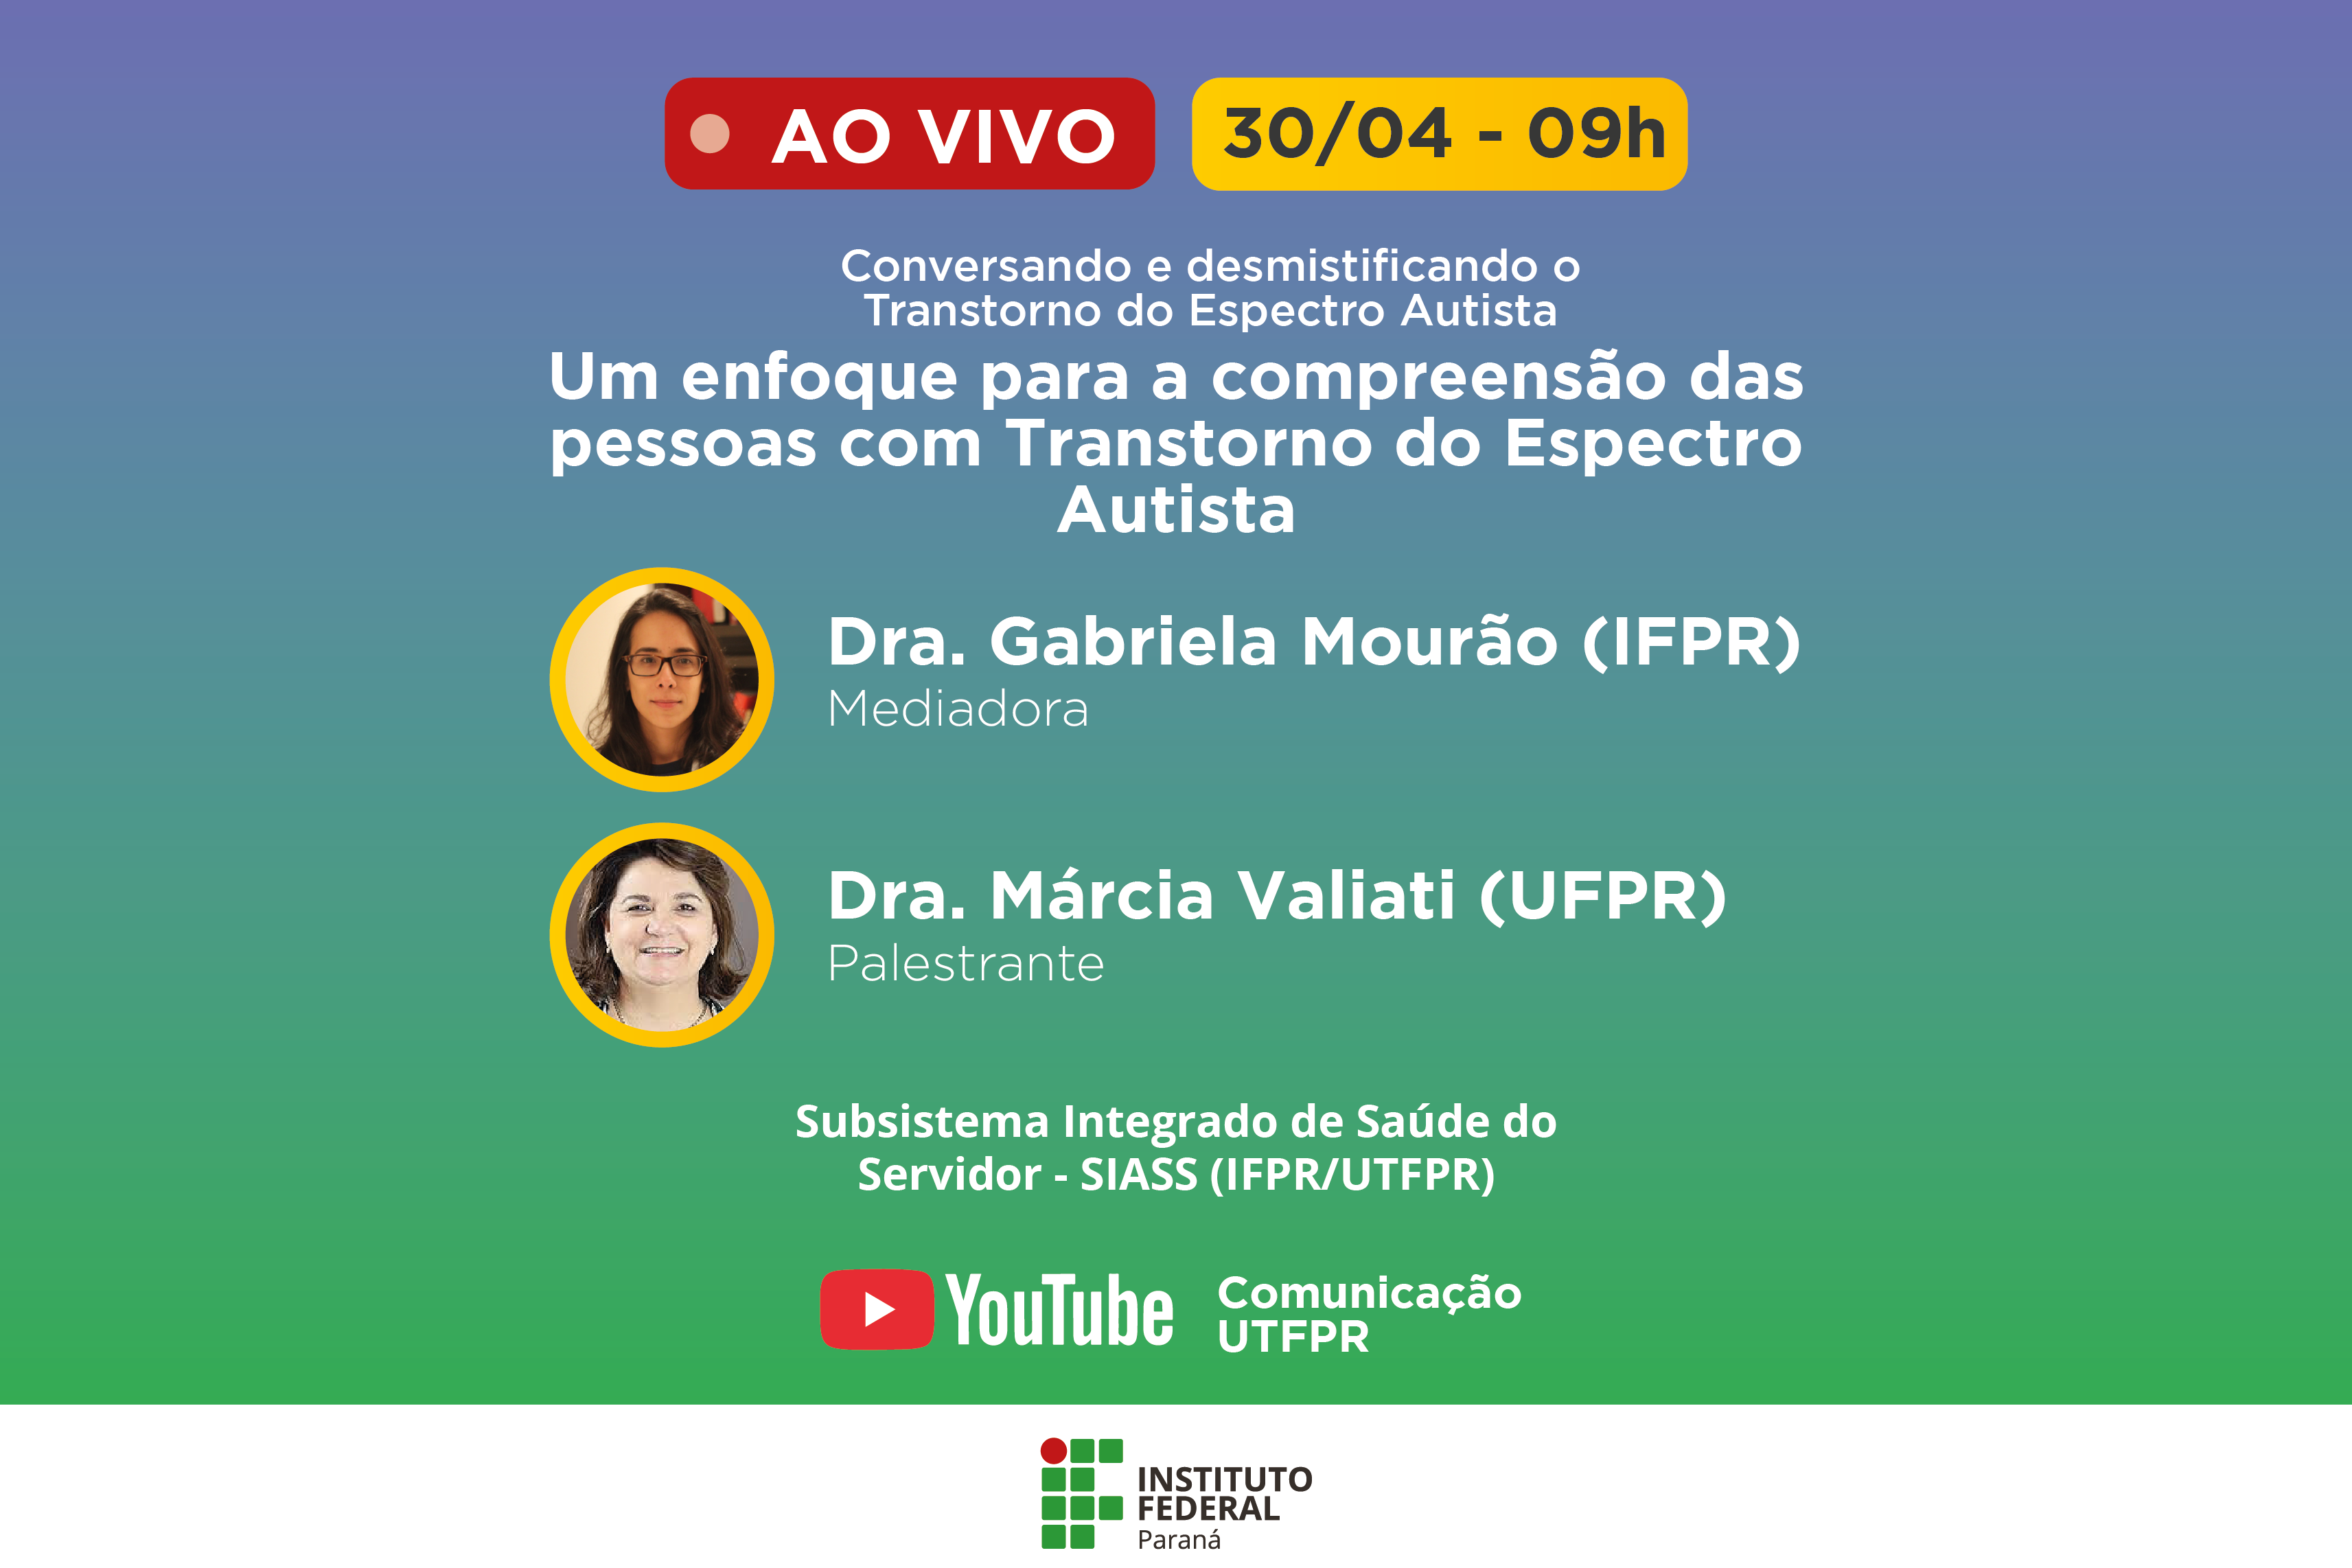 "Um enfoque para a compreensão das pessoas com Transtorno do Espectro Autista. Doutora Gabriela Mourão. Doutora Márcia Vallati"